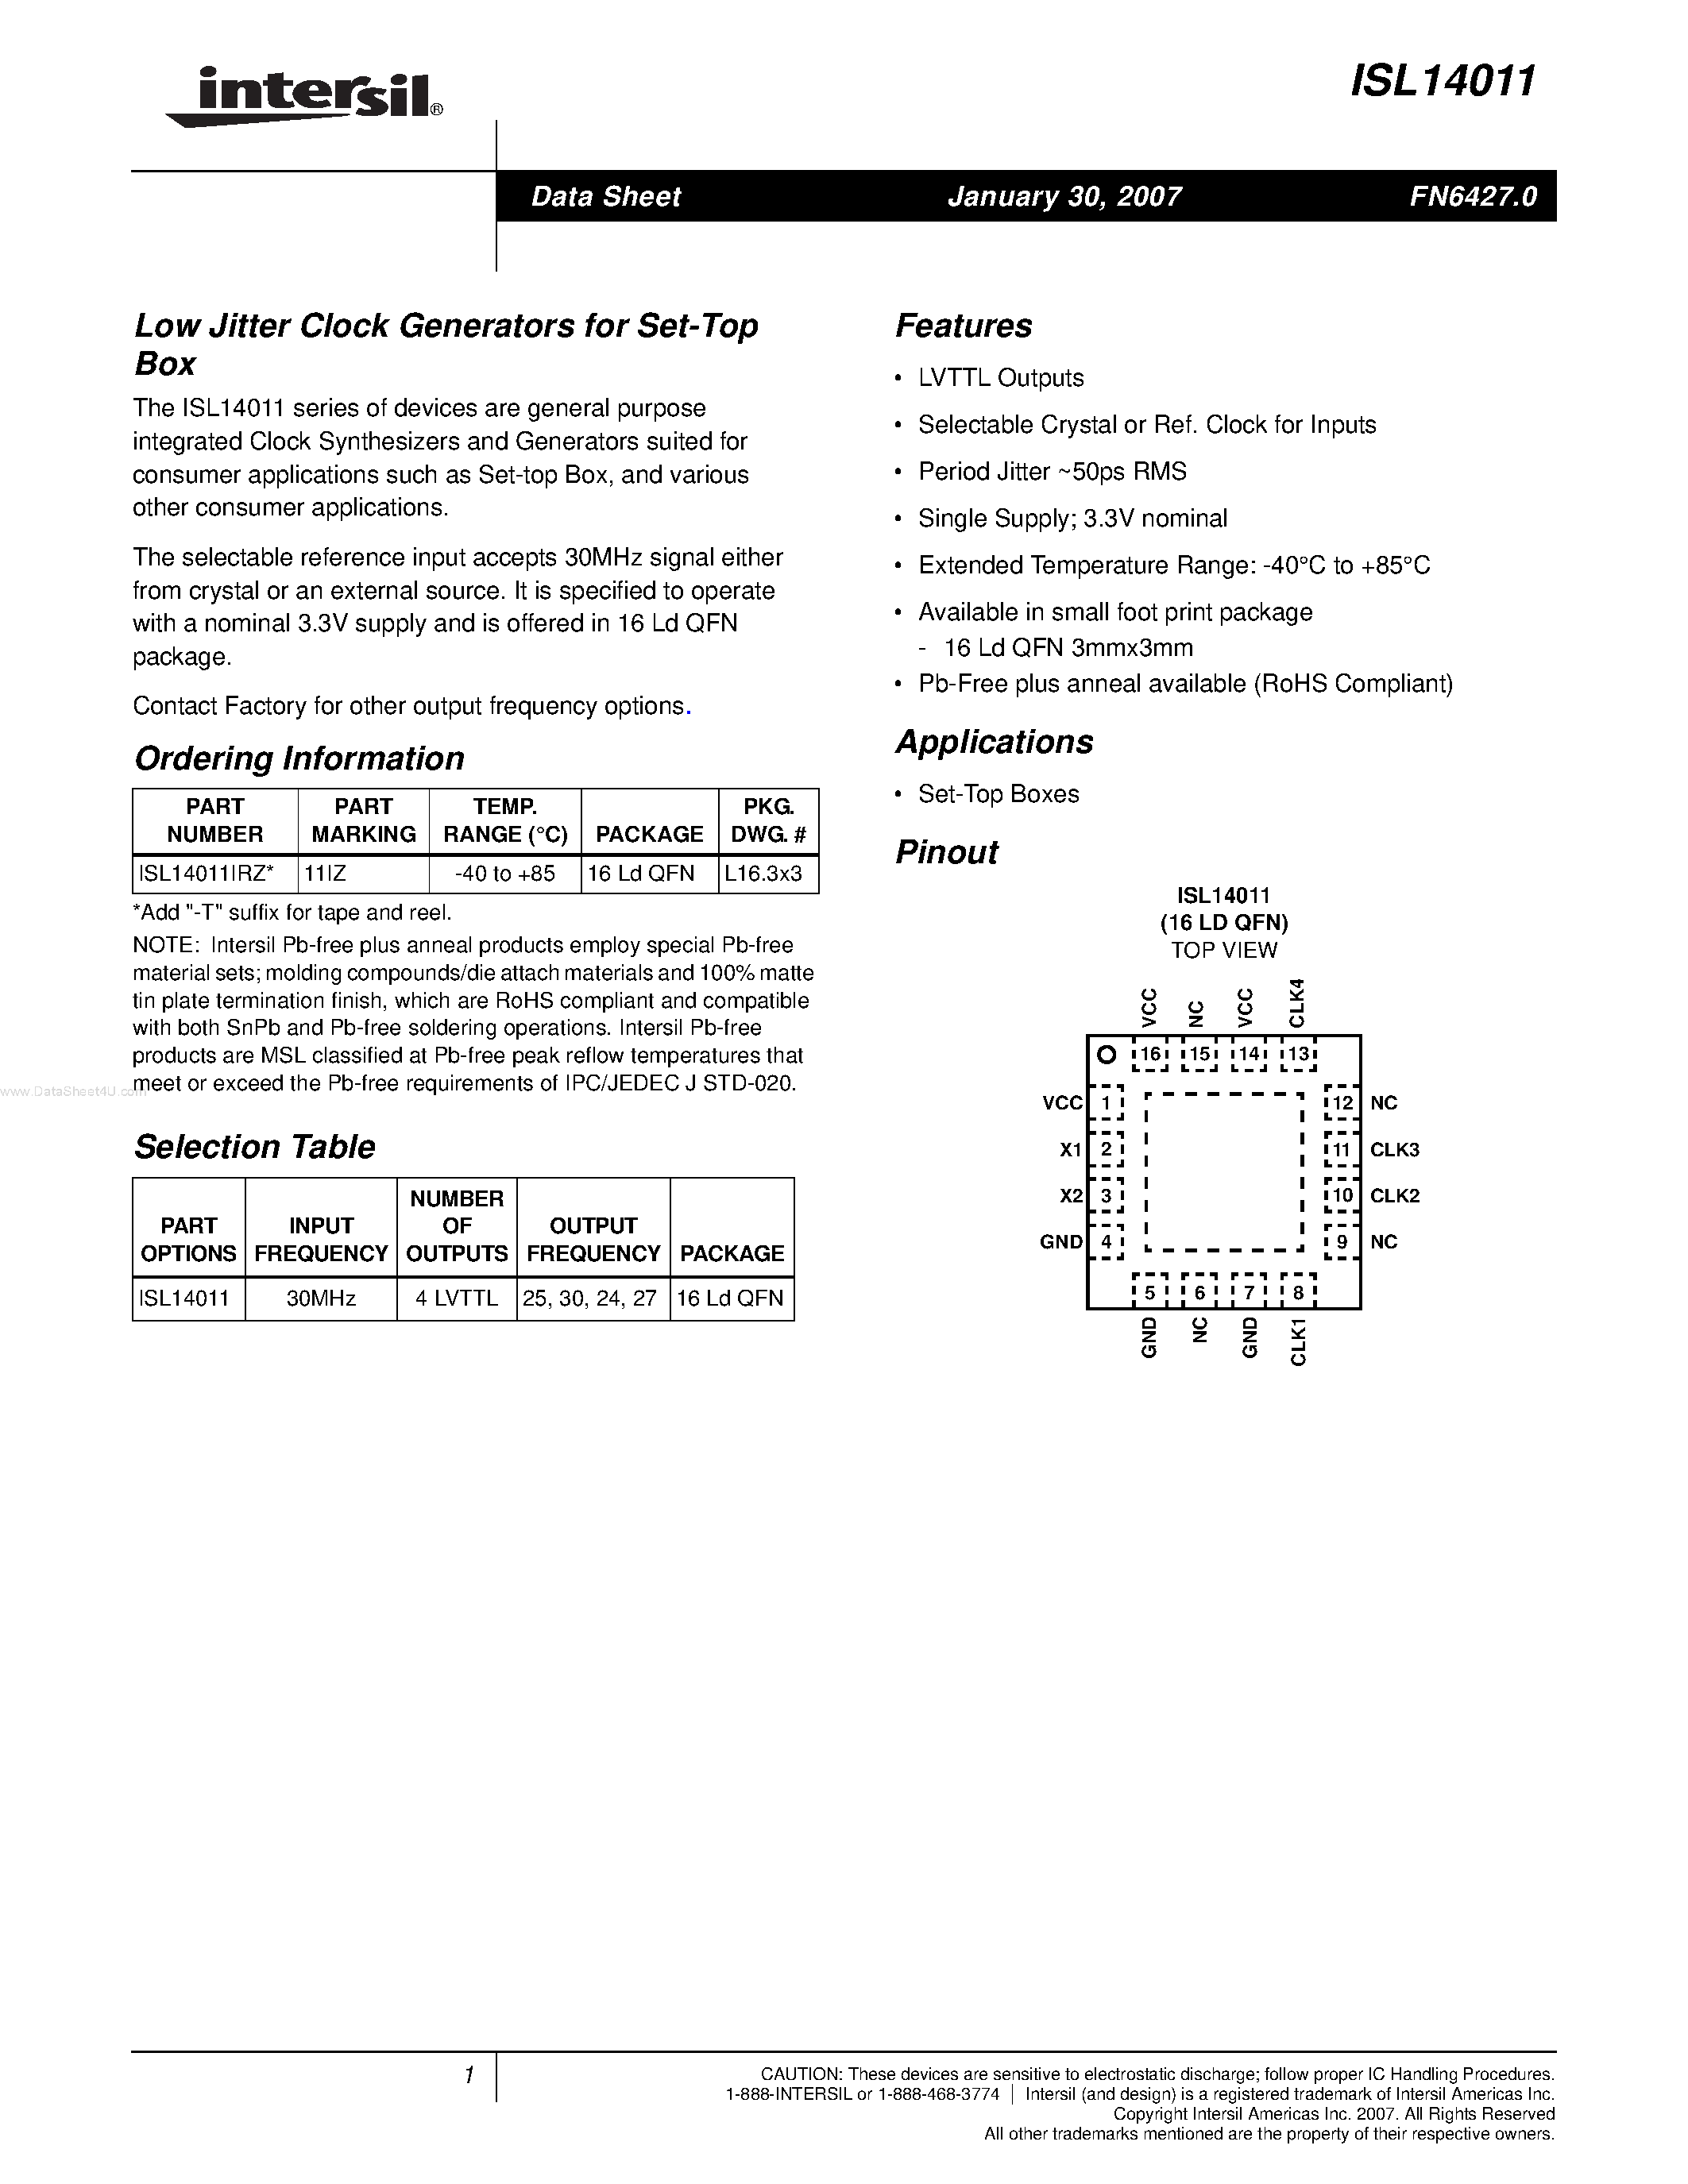 Даташит ISL14011 - Low Jitter Clock Generators страница 1